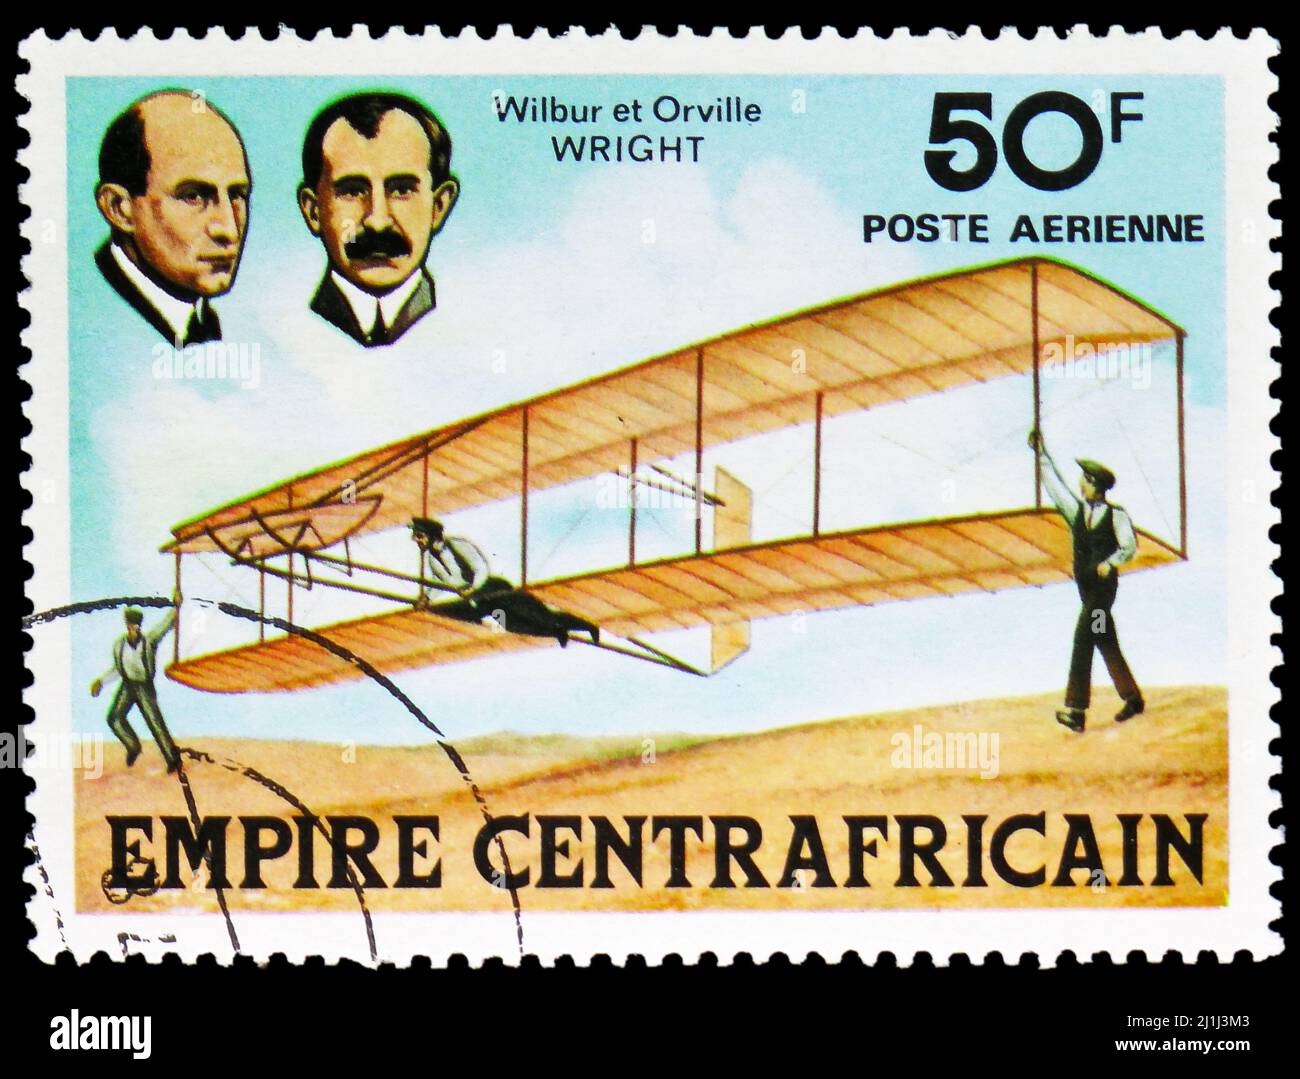 MOSKAU, RUSSLAND - 12. MÄRZ 2022: Die in der Zentralafrikanischen Republik gedruckte Briefmarke zeigt Wilbur und Orville Wright und Plane, History of Aviation seri Stockfoto